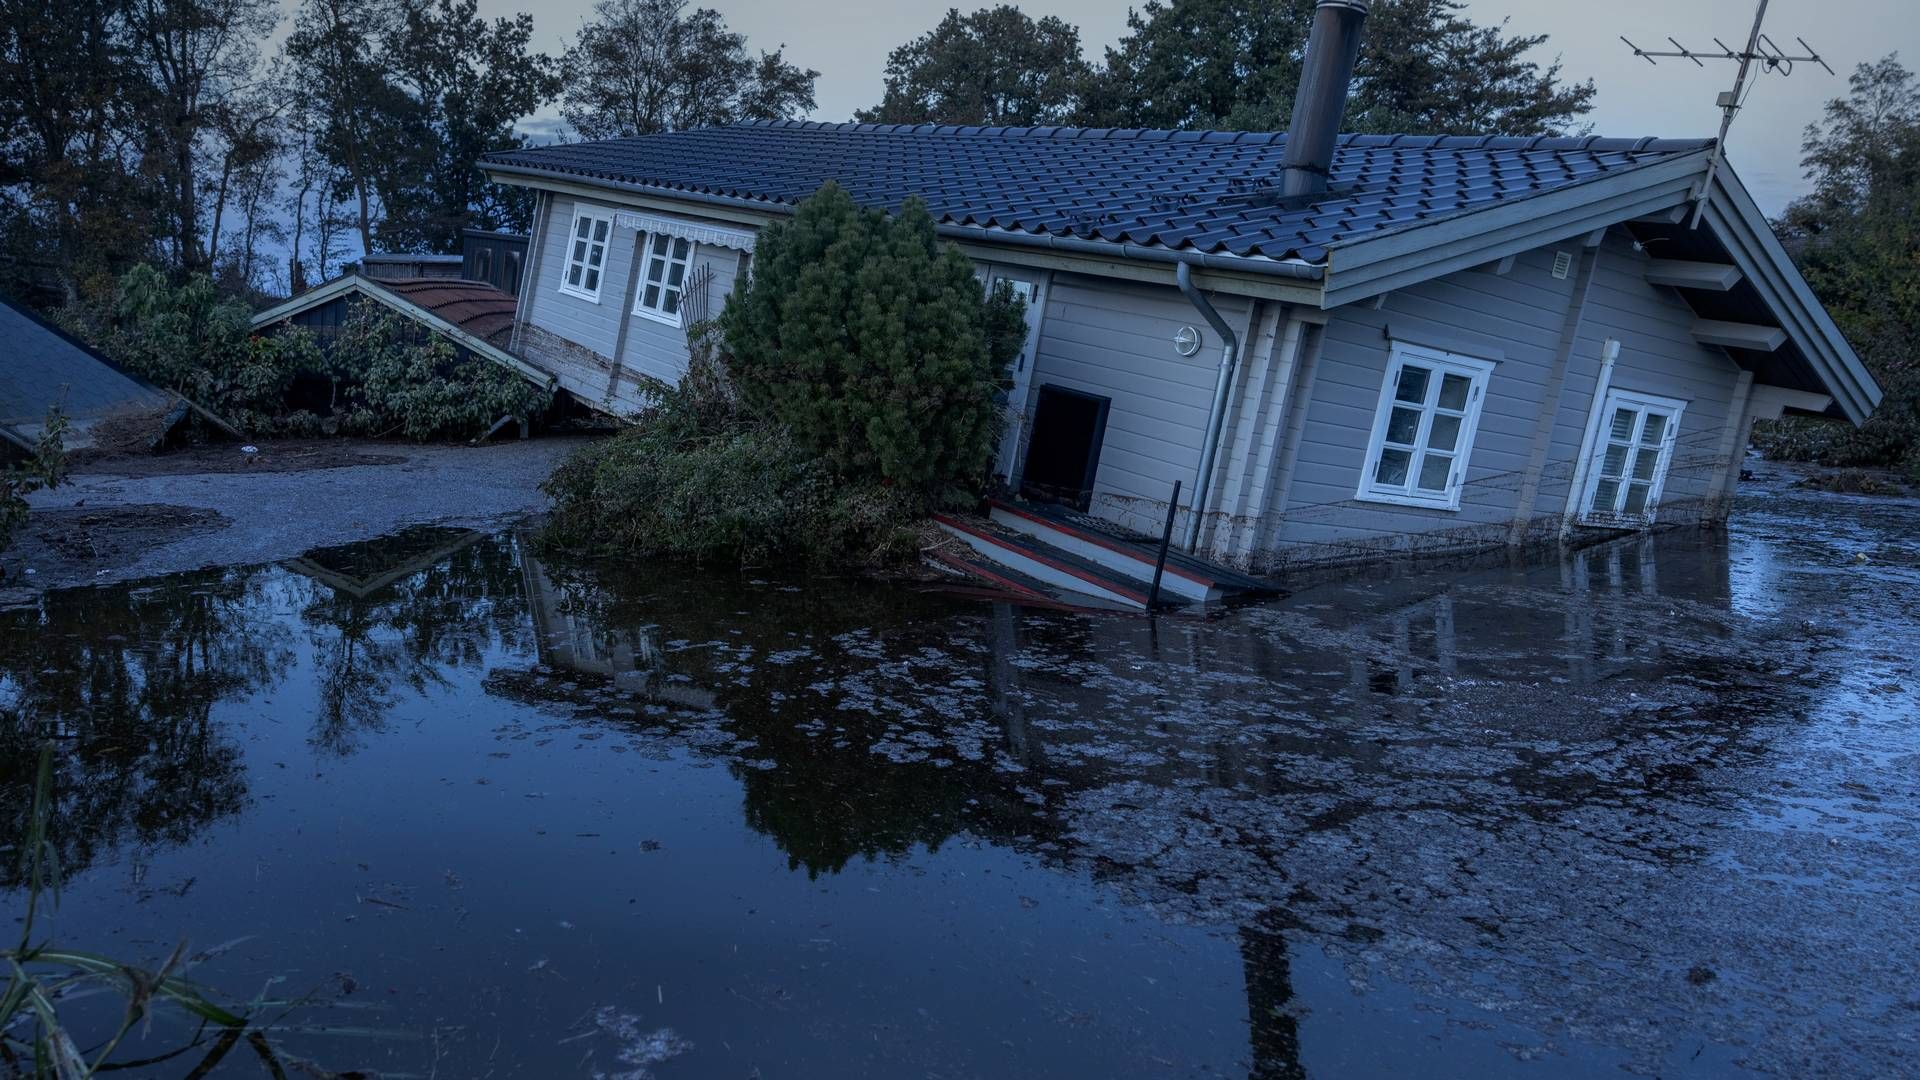 Sommerhusområdet Roneklint på Sjælland var stadig ramt af massive overvømmelser tre dage efter, et dige kollapsede under stormen i oktober. | Foto: Mads Nissen